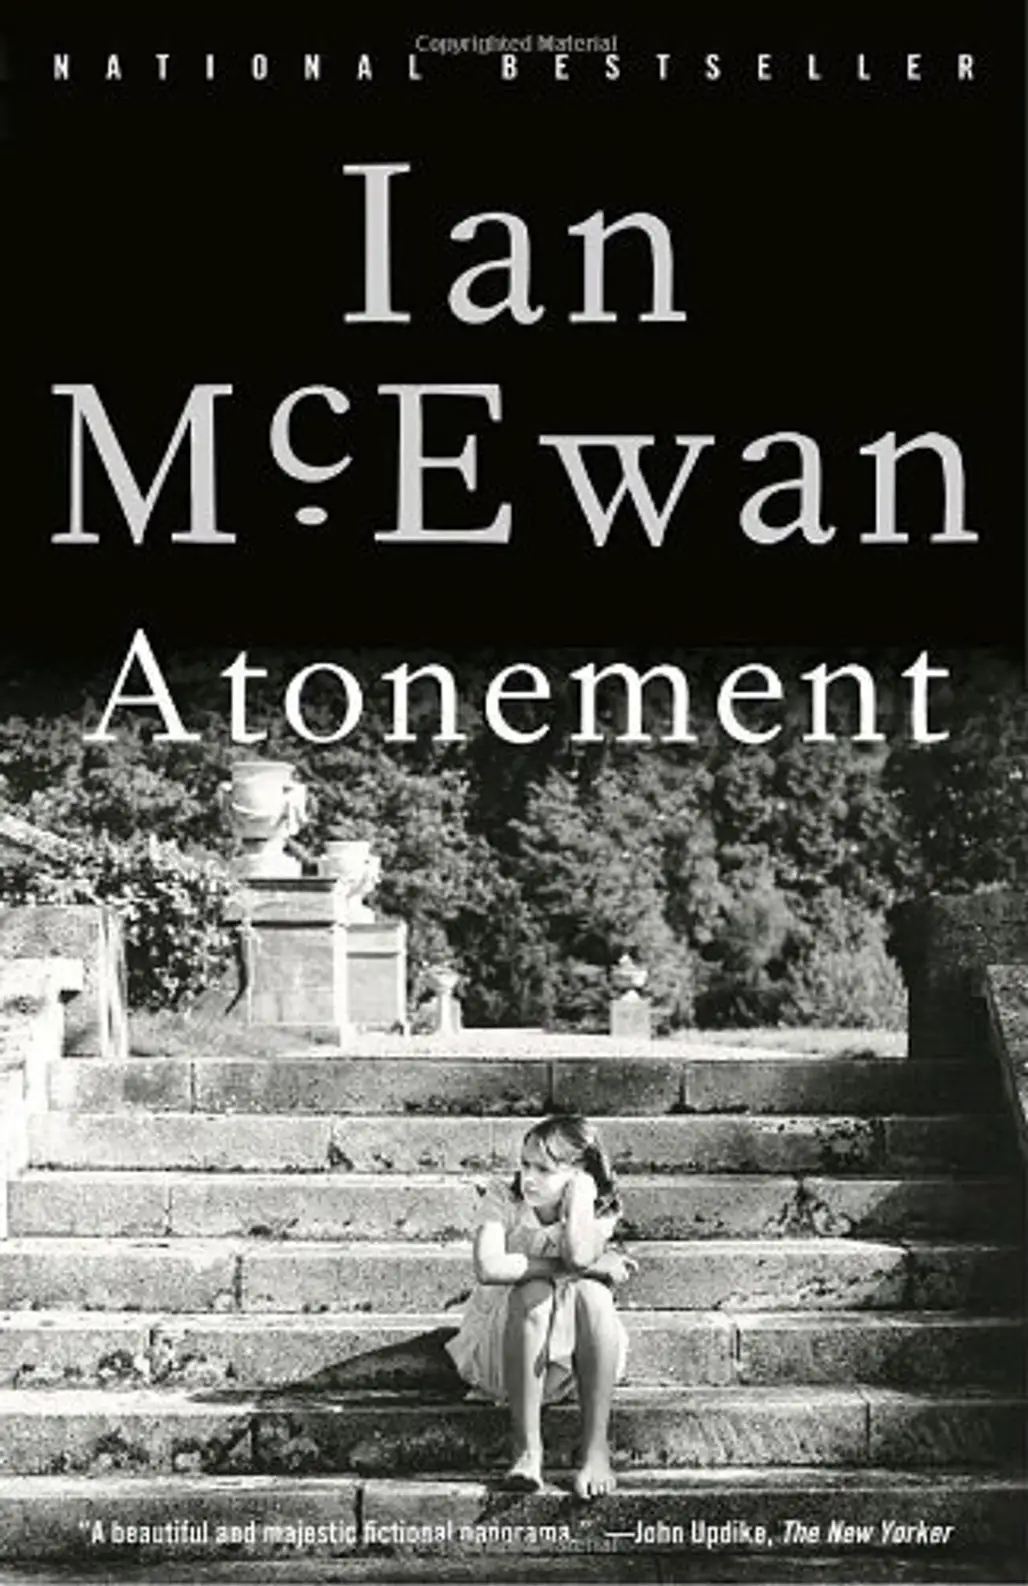 Atonement – Ian McKeown